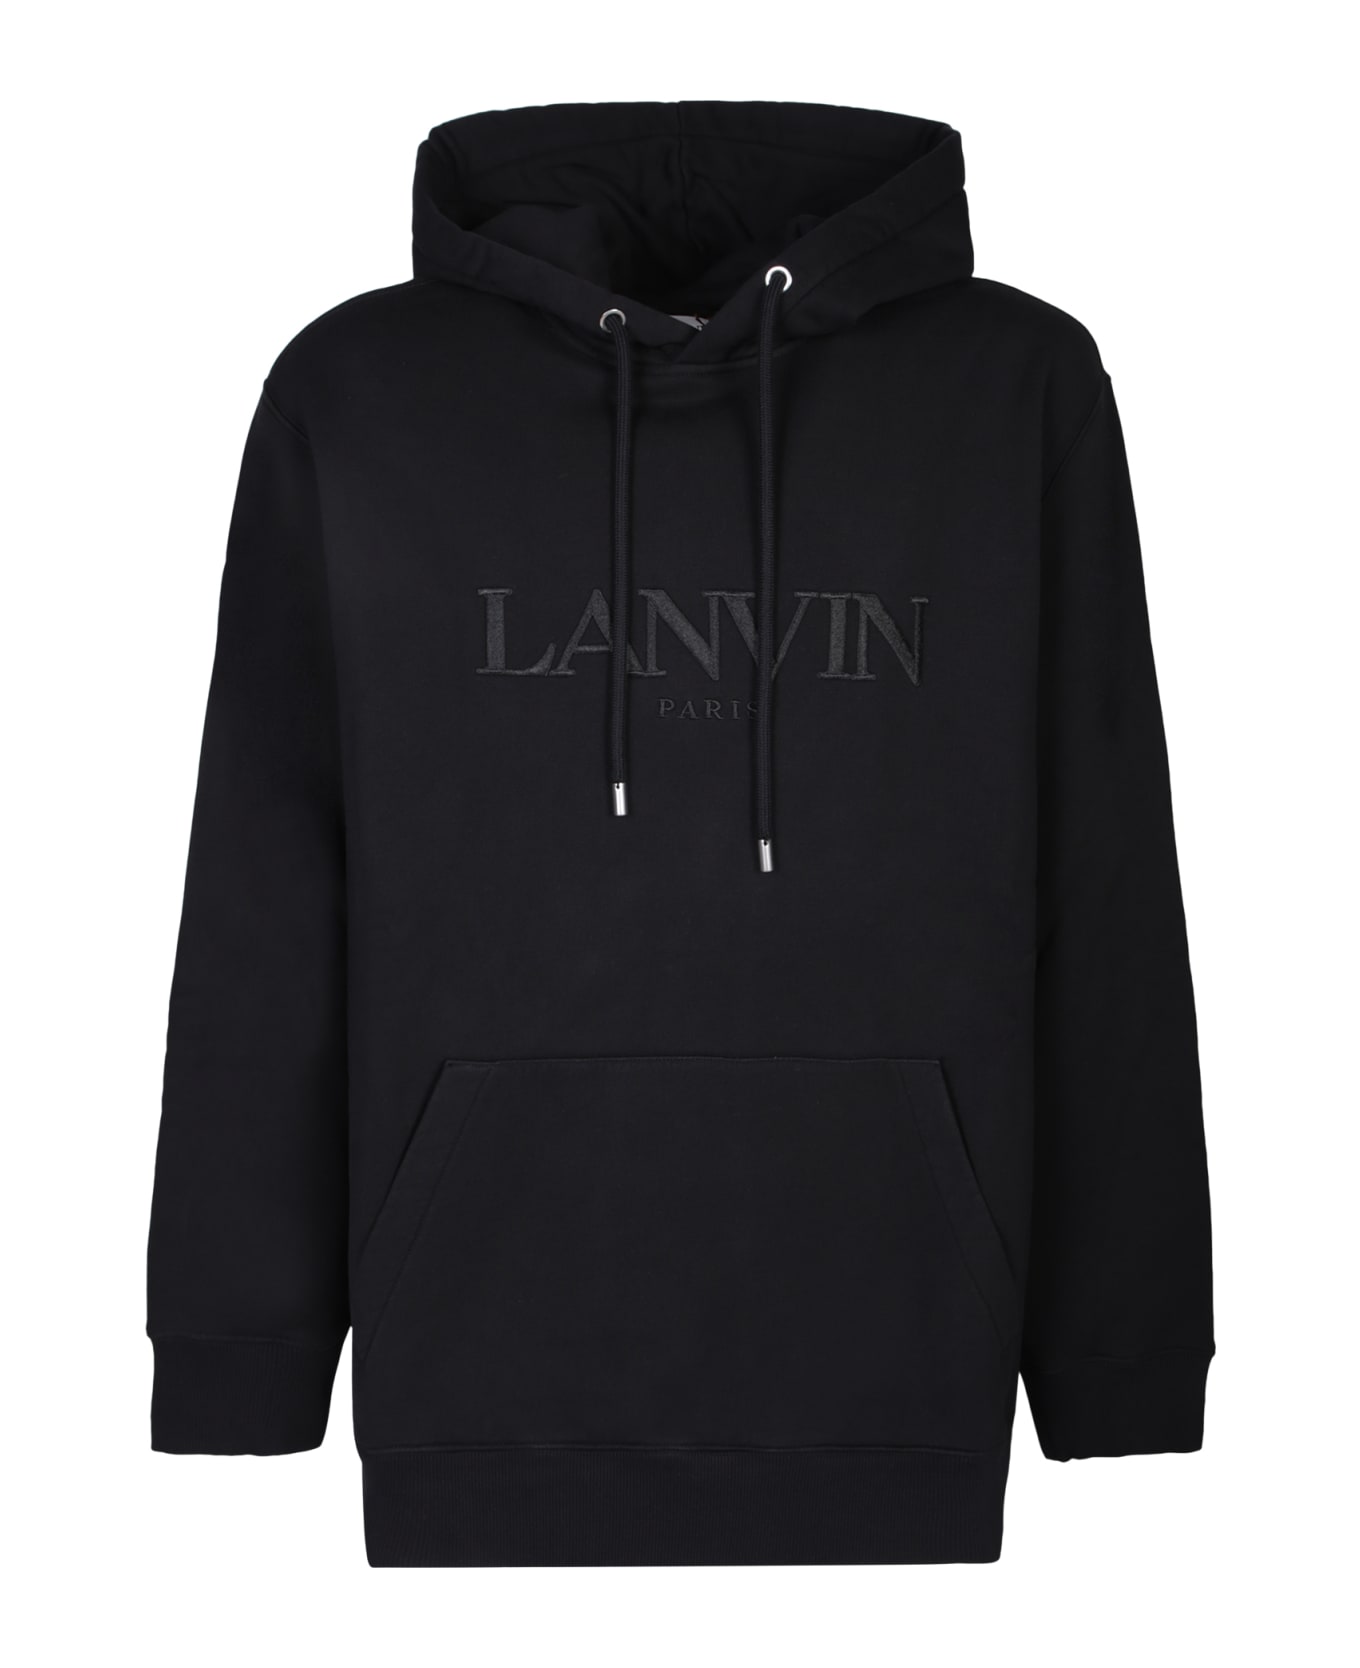 Lanvin Paris Black Hoodie - Black